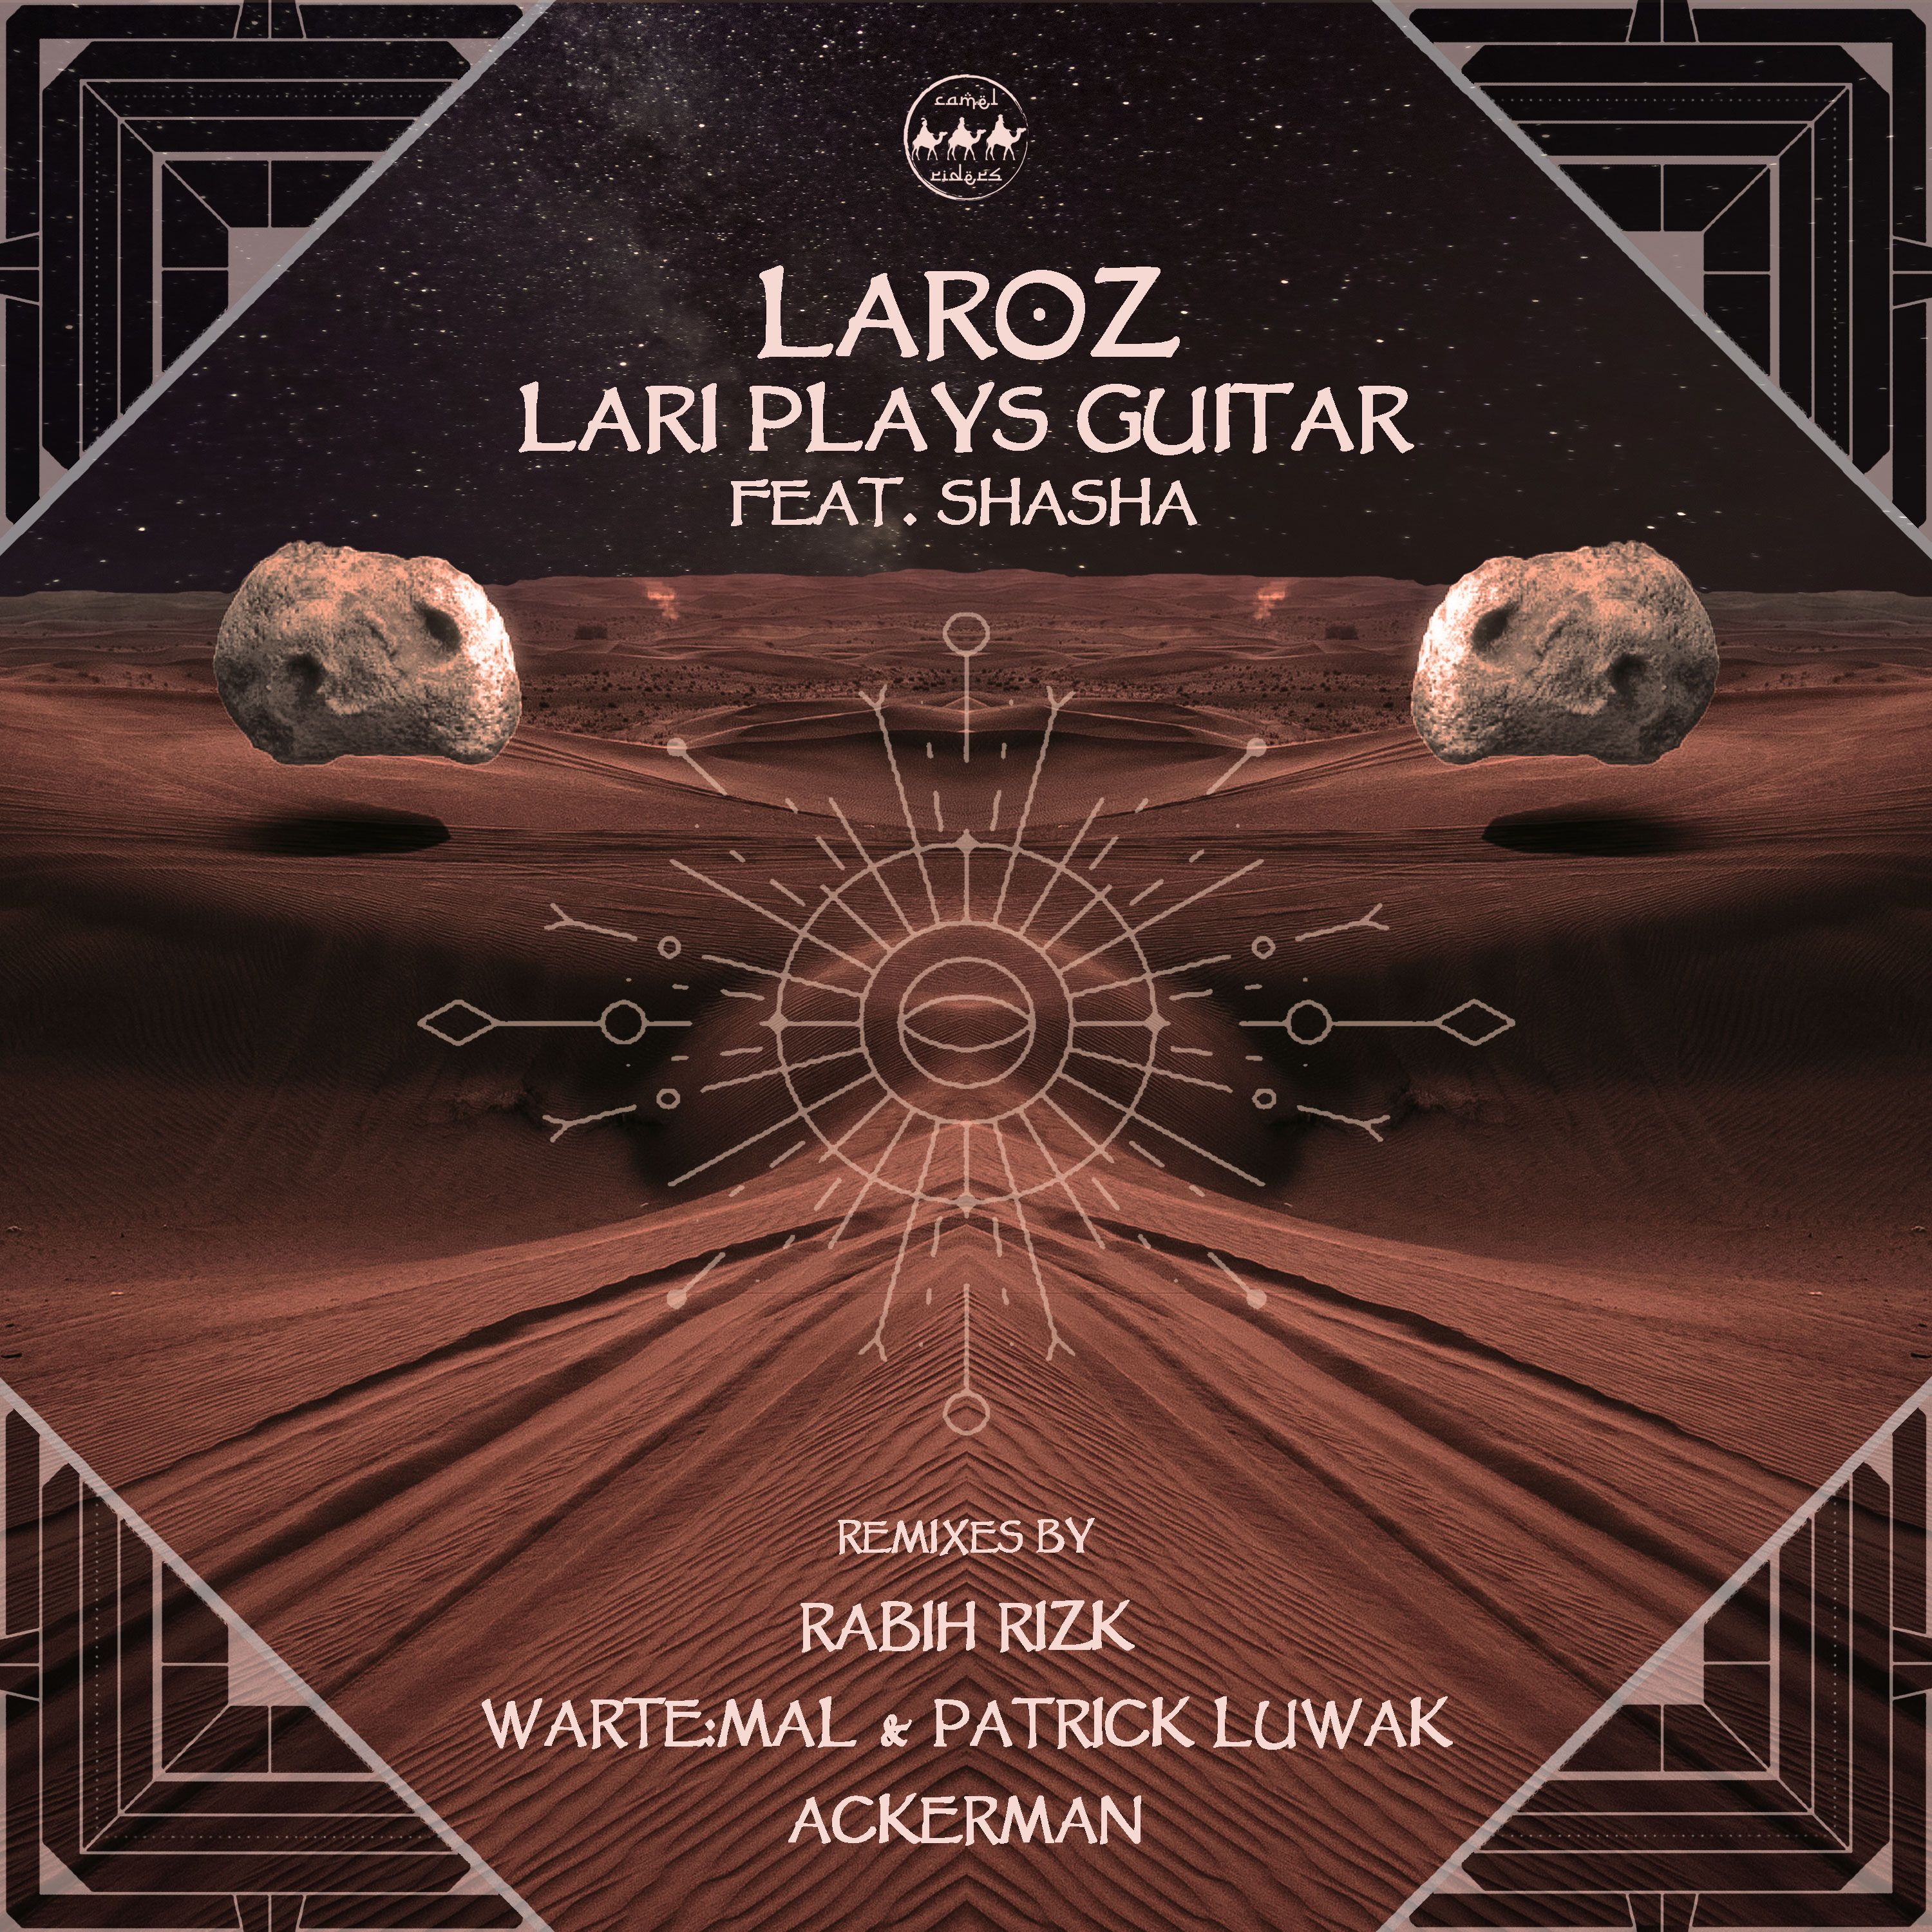 Soo dejiso Laroz - Lari Plays Guitar FT. SHASHA (Wartemal & Patrick Luwak Remix)